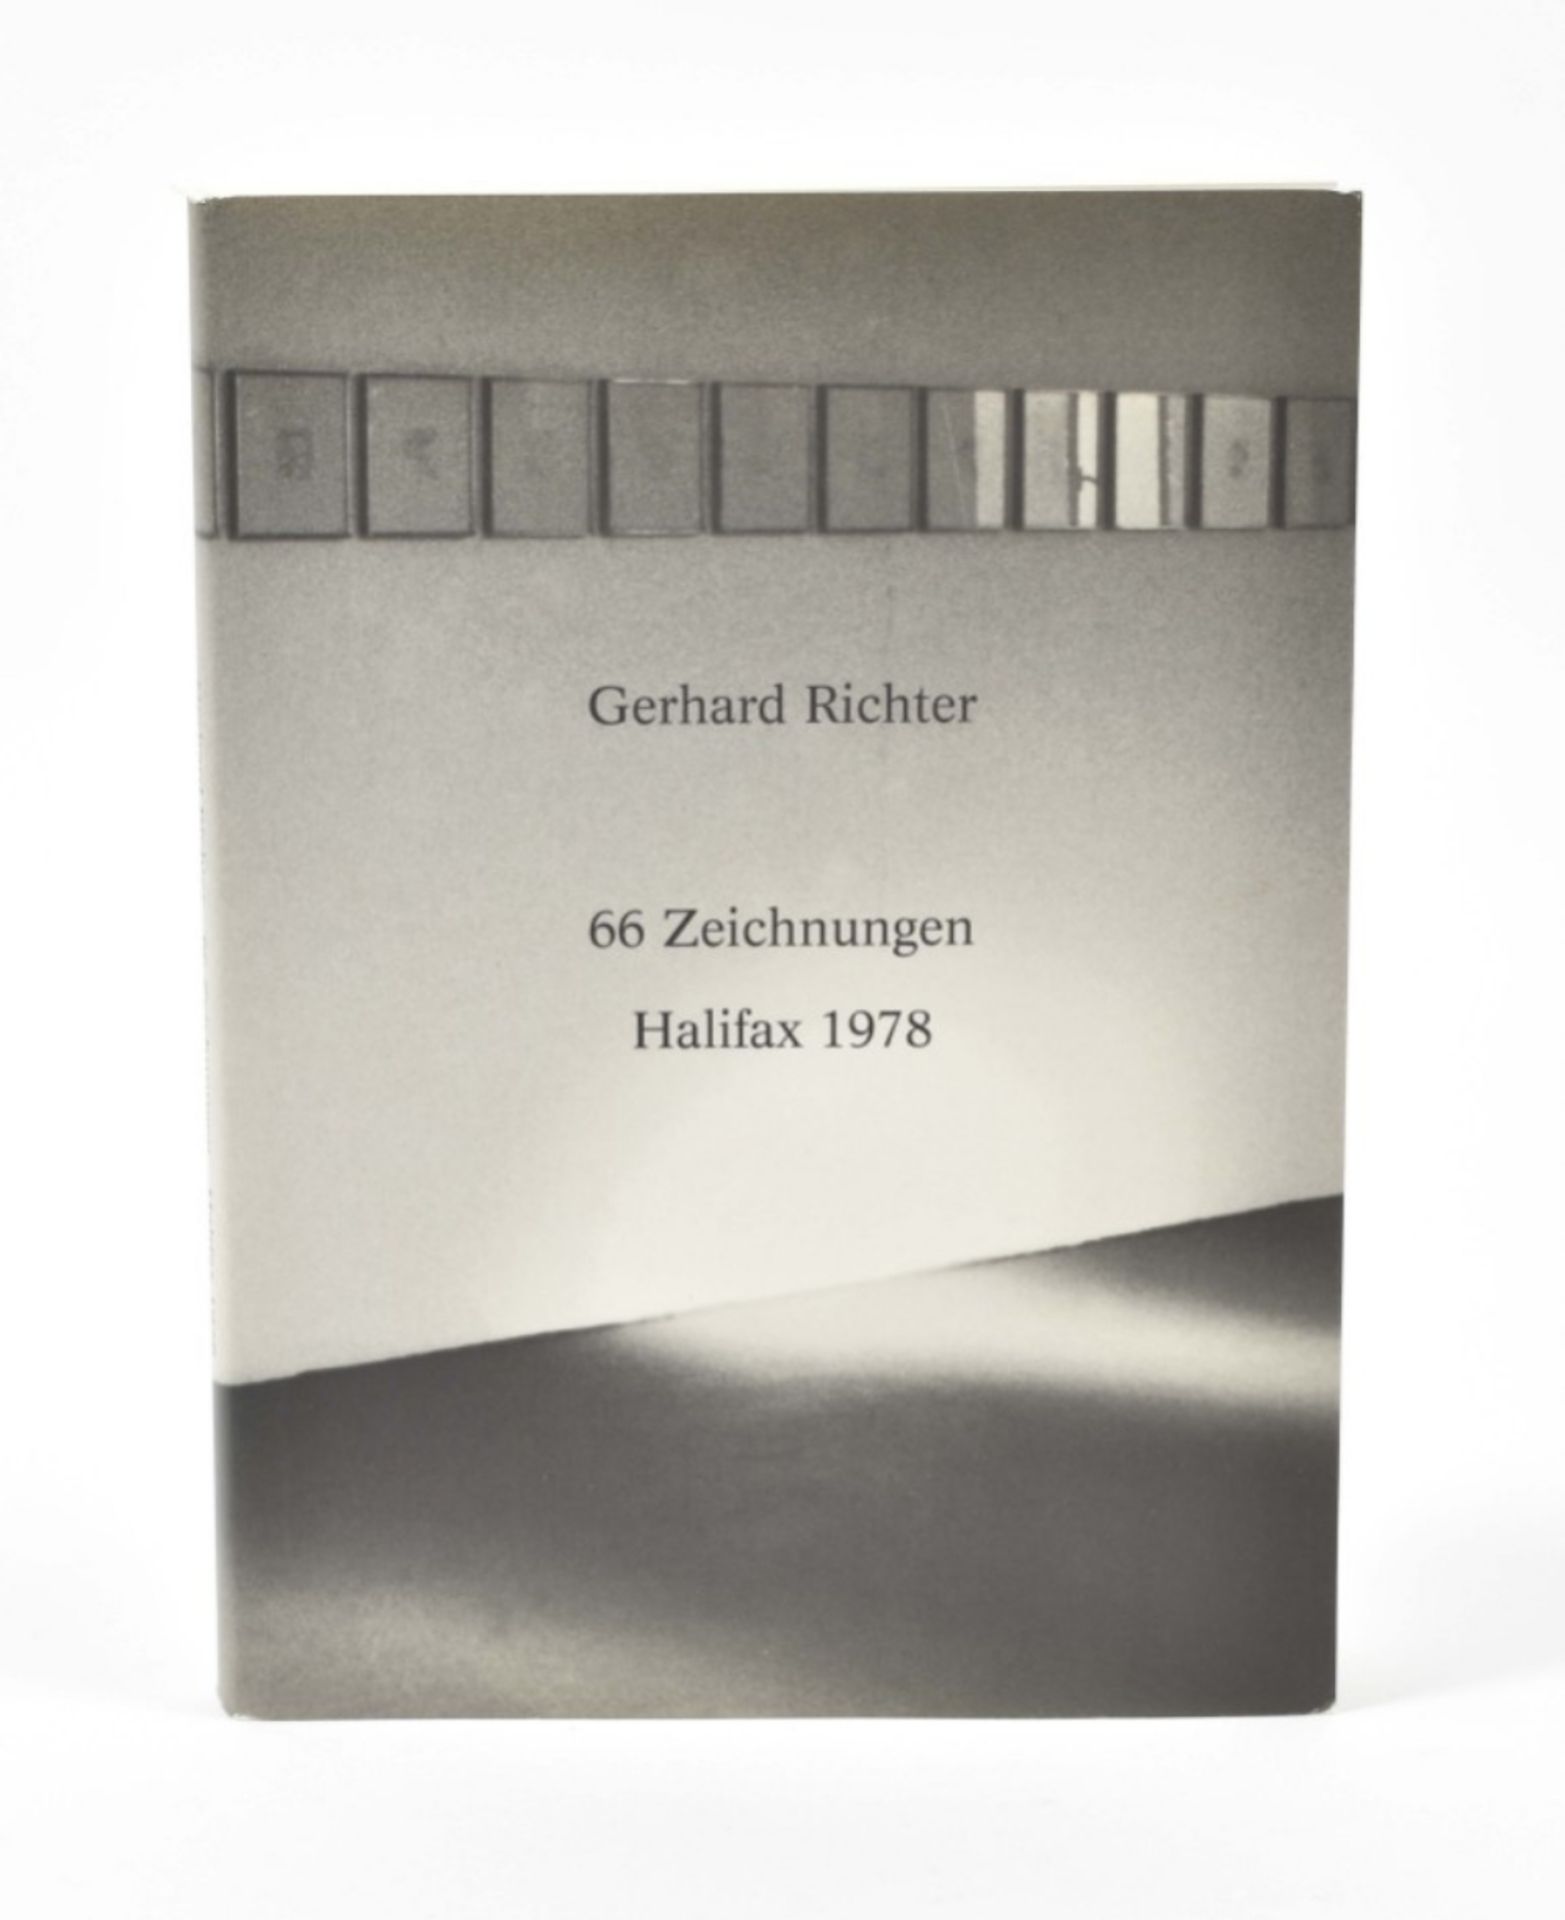 [s and 1970s] Gerhard Richter, 66 Zeichnungen Halifax 1978